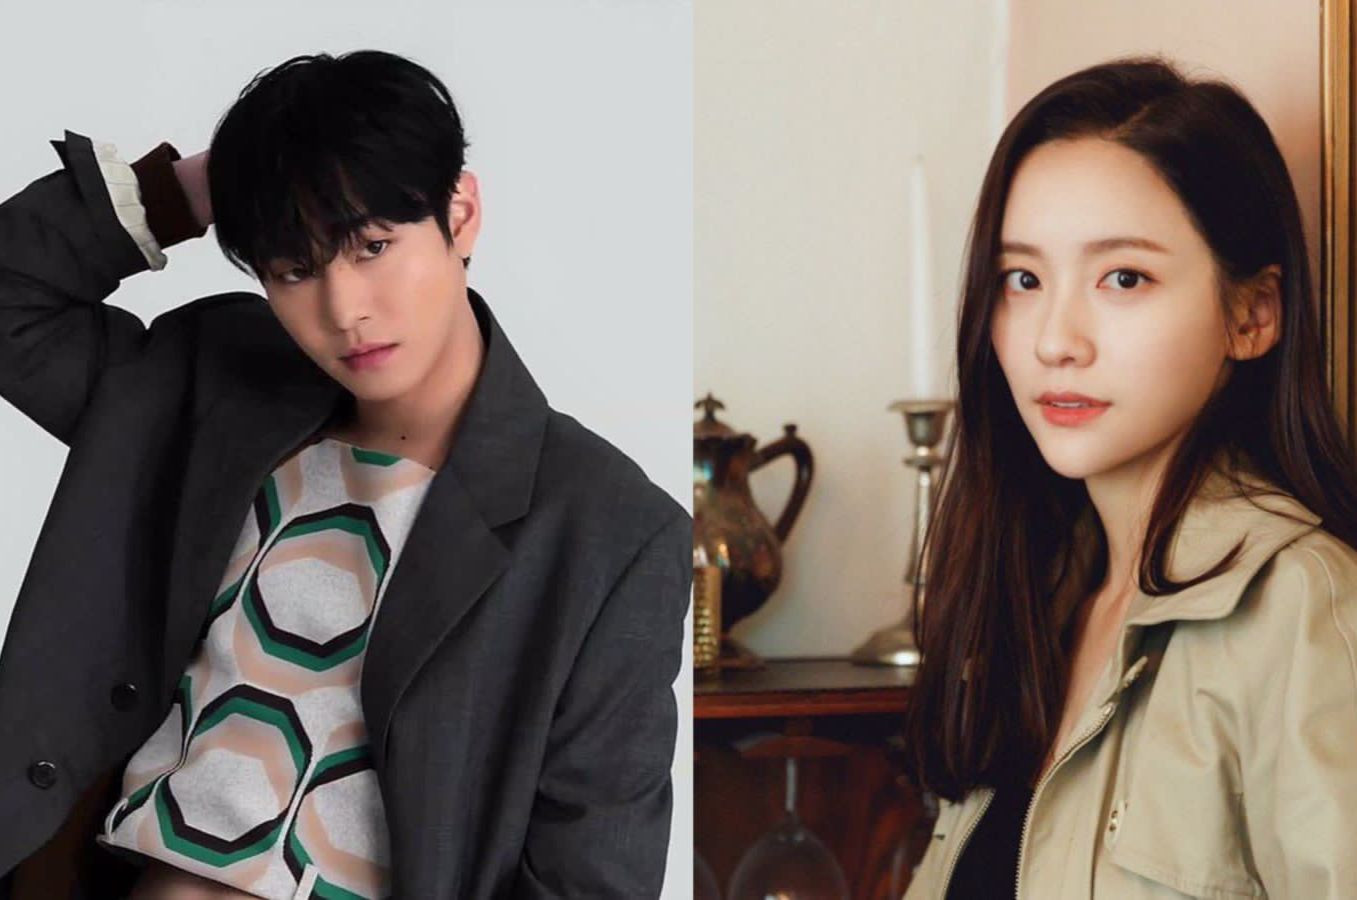 Aktor Drama “Business Proposal” Ahn Hyo Seop Dan Park Ji Hyun Dikabarkan Berpacaran